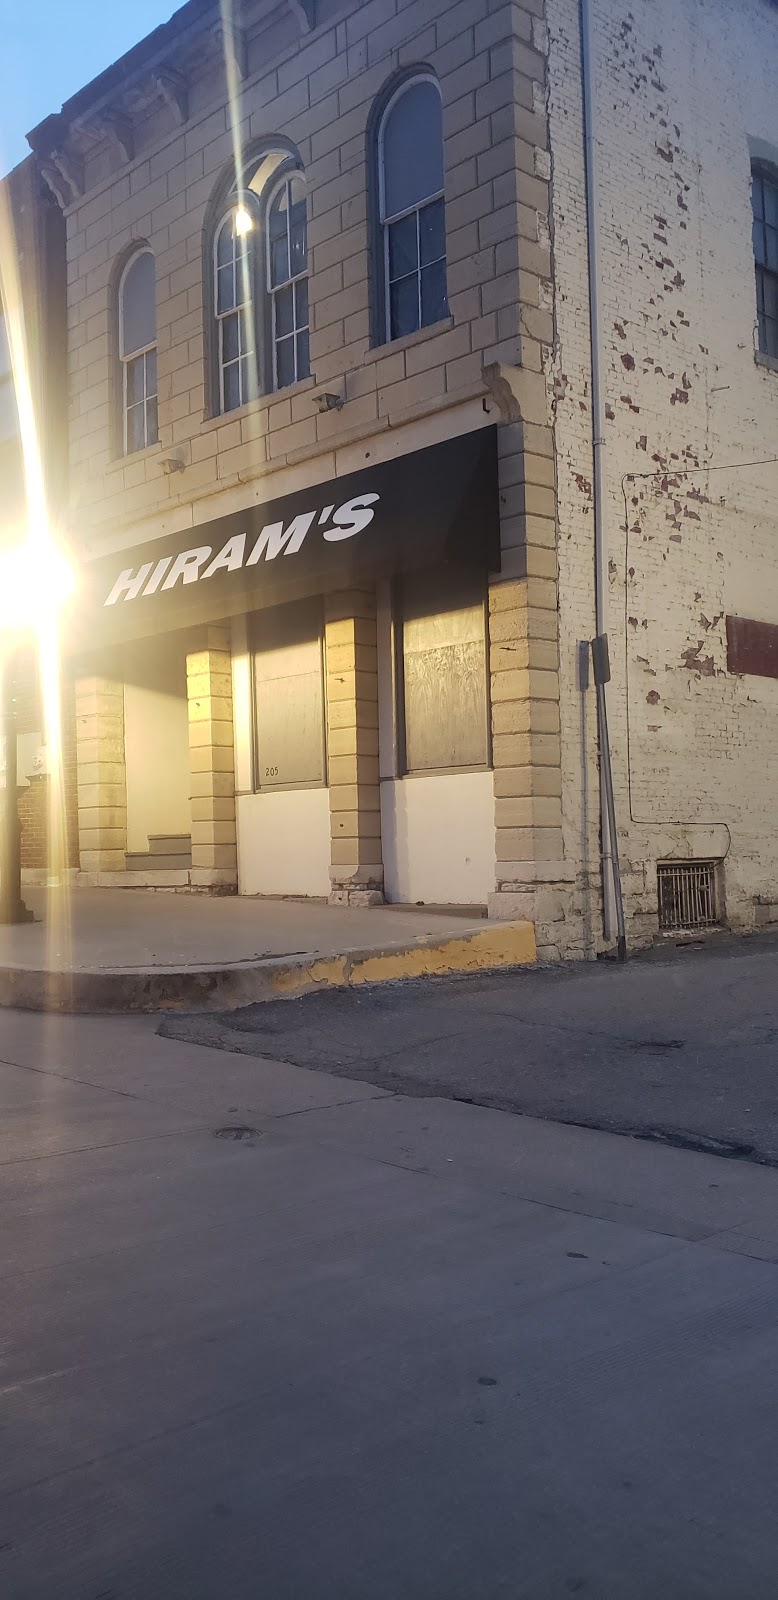 Hirams Bar | 219 W 3rd St, Alton, IL 62002 | Phone: (618) 666-3486